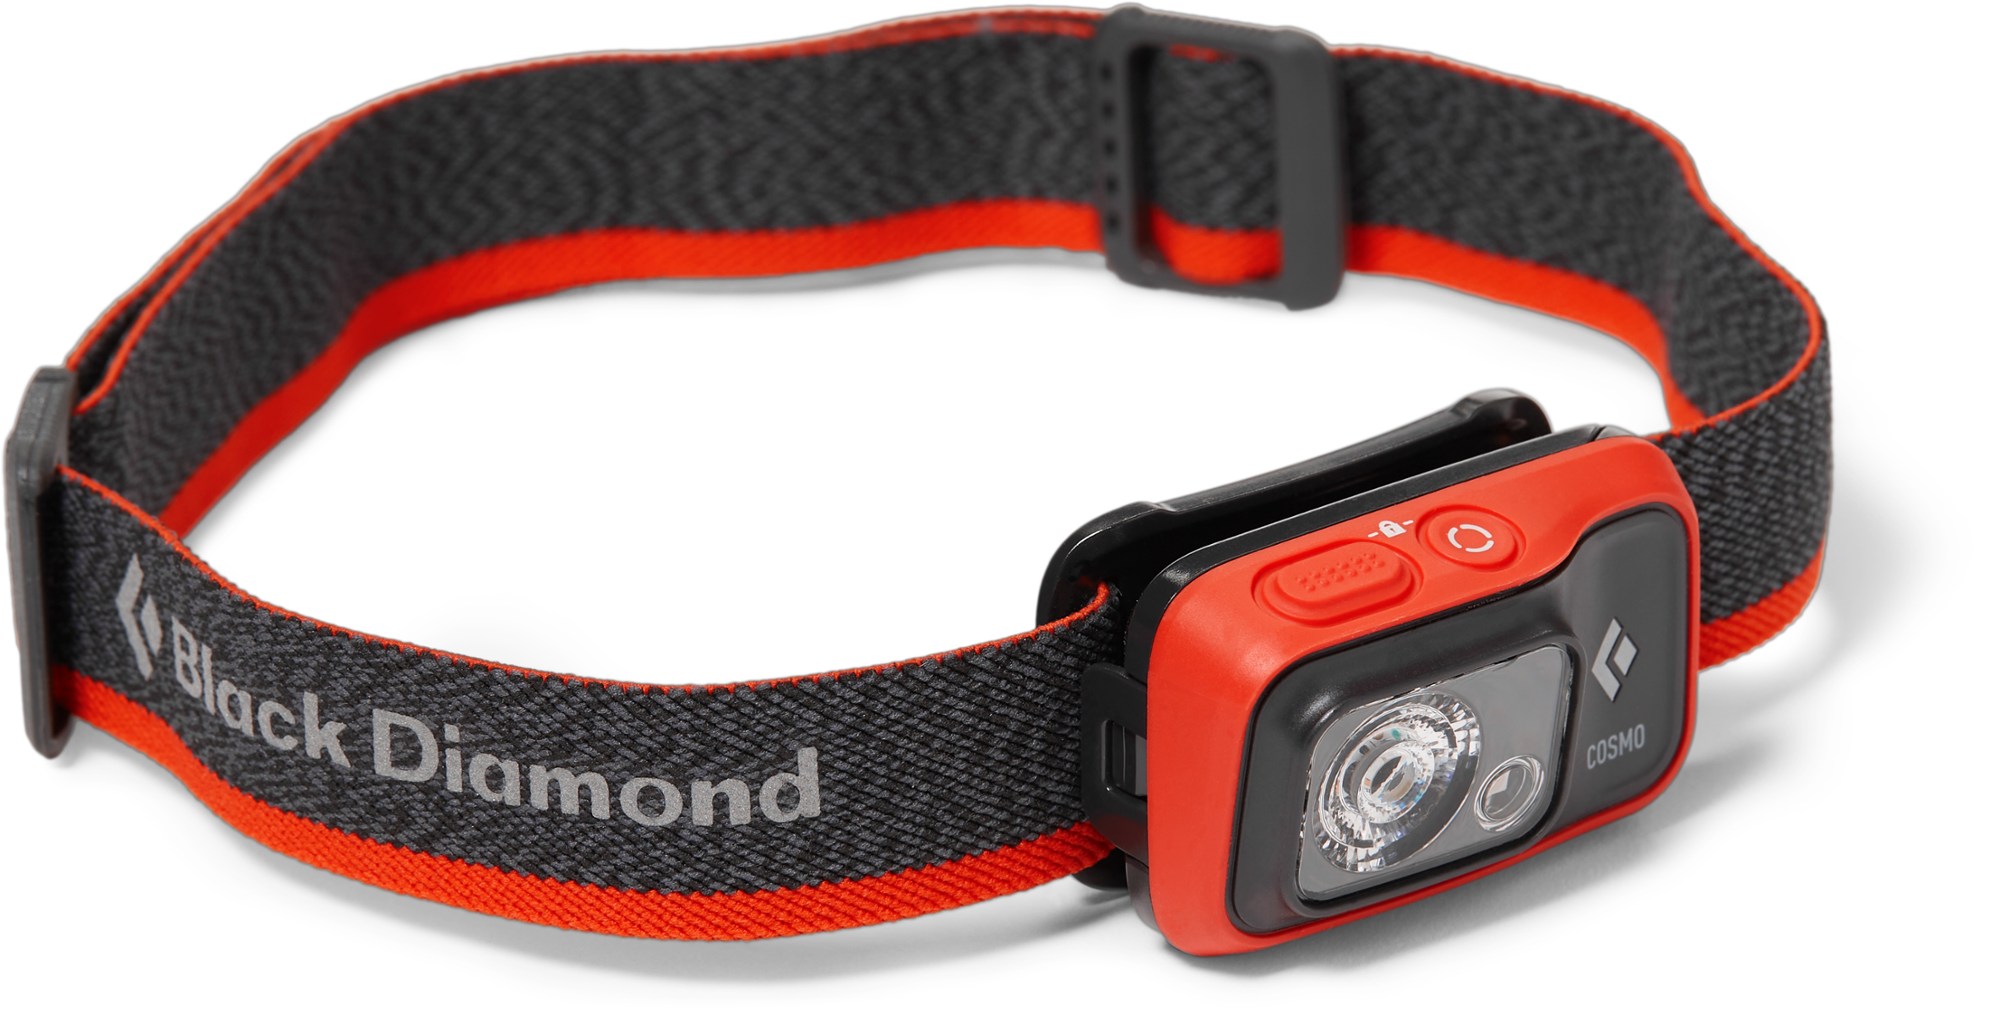 Фара Космо 350 Black Diamond, оранжевый налобный фонарь для трейлраннинга 250 люмен ontrail evadict